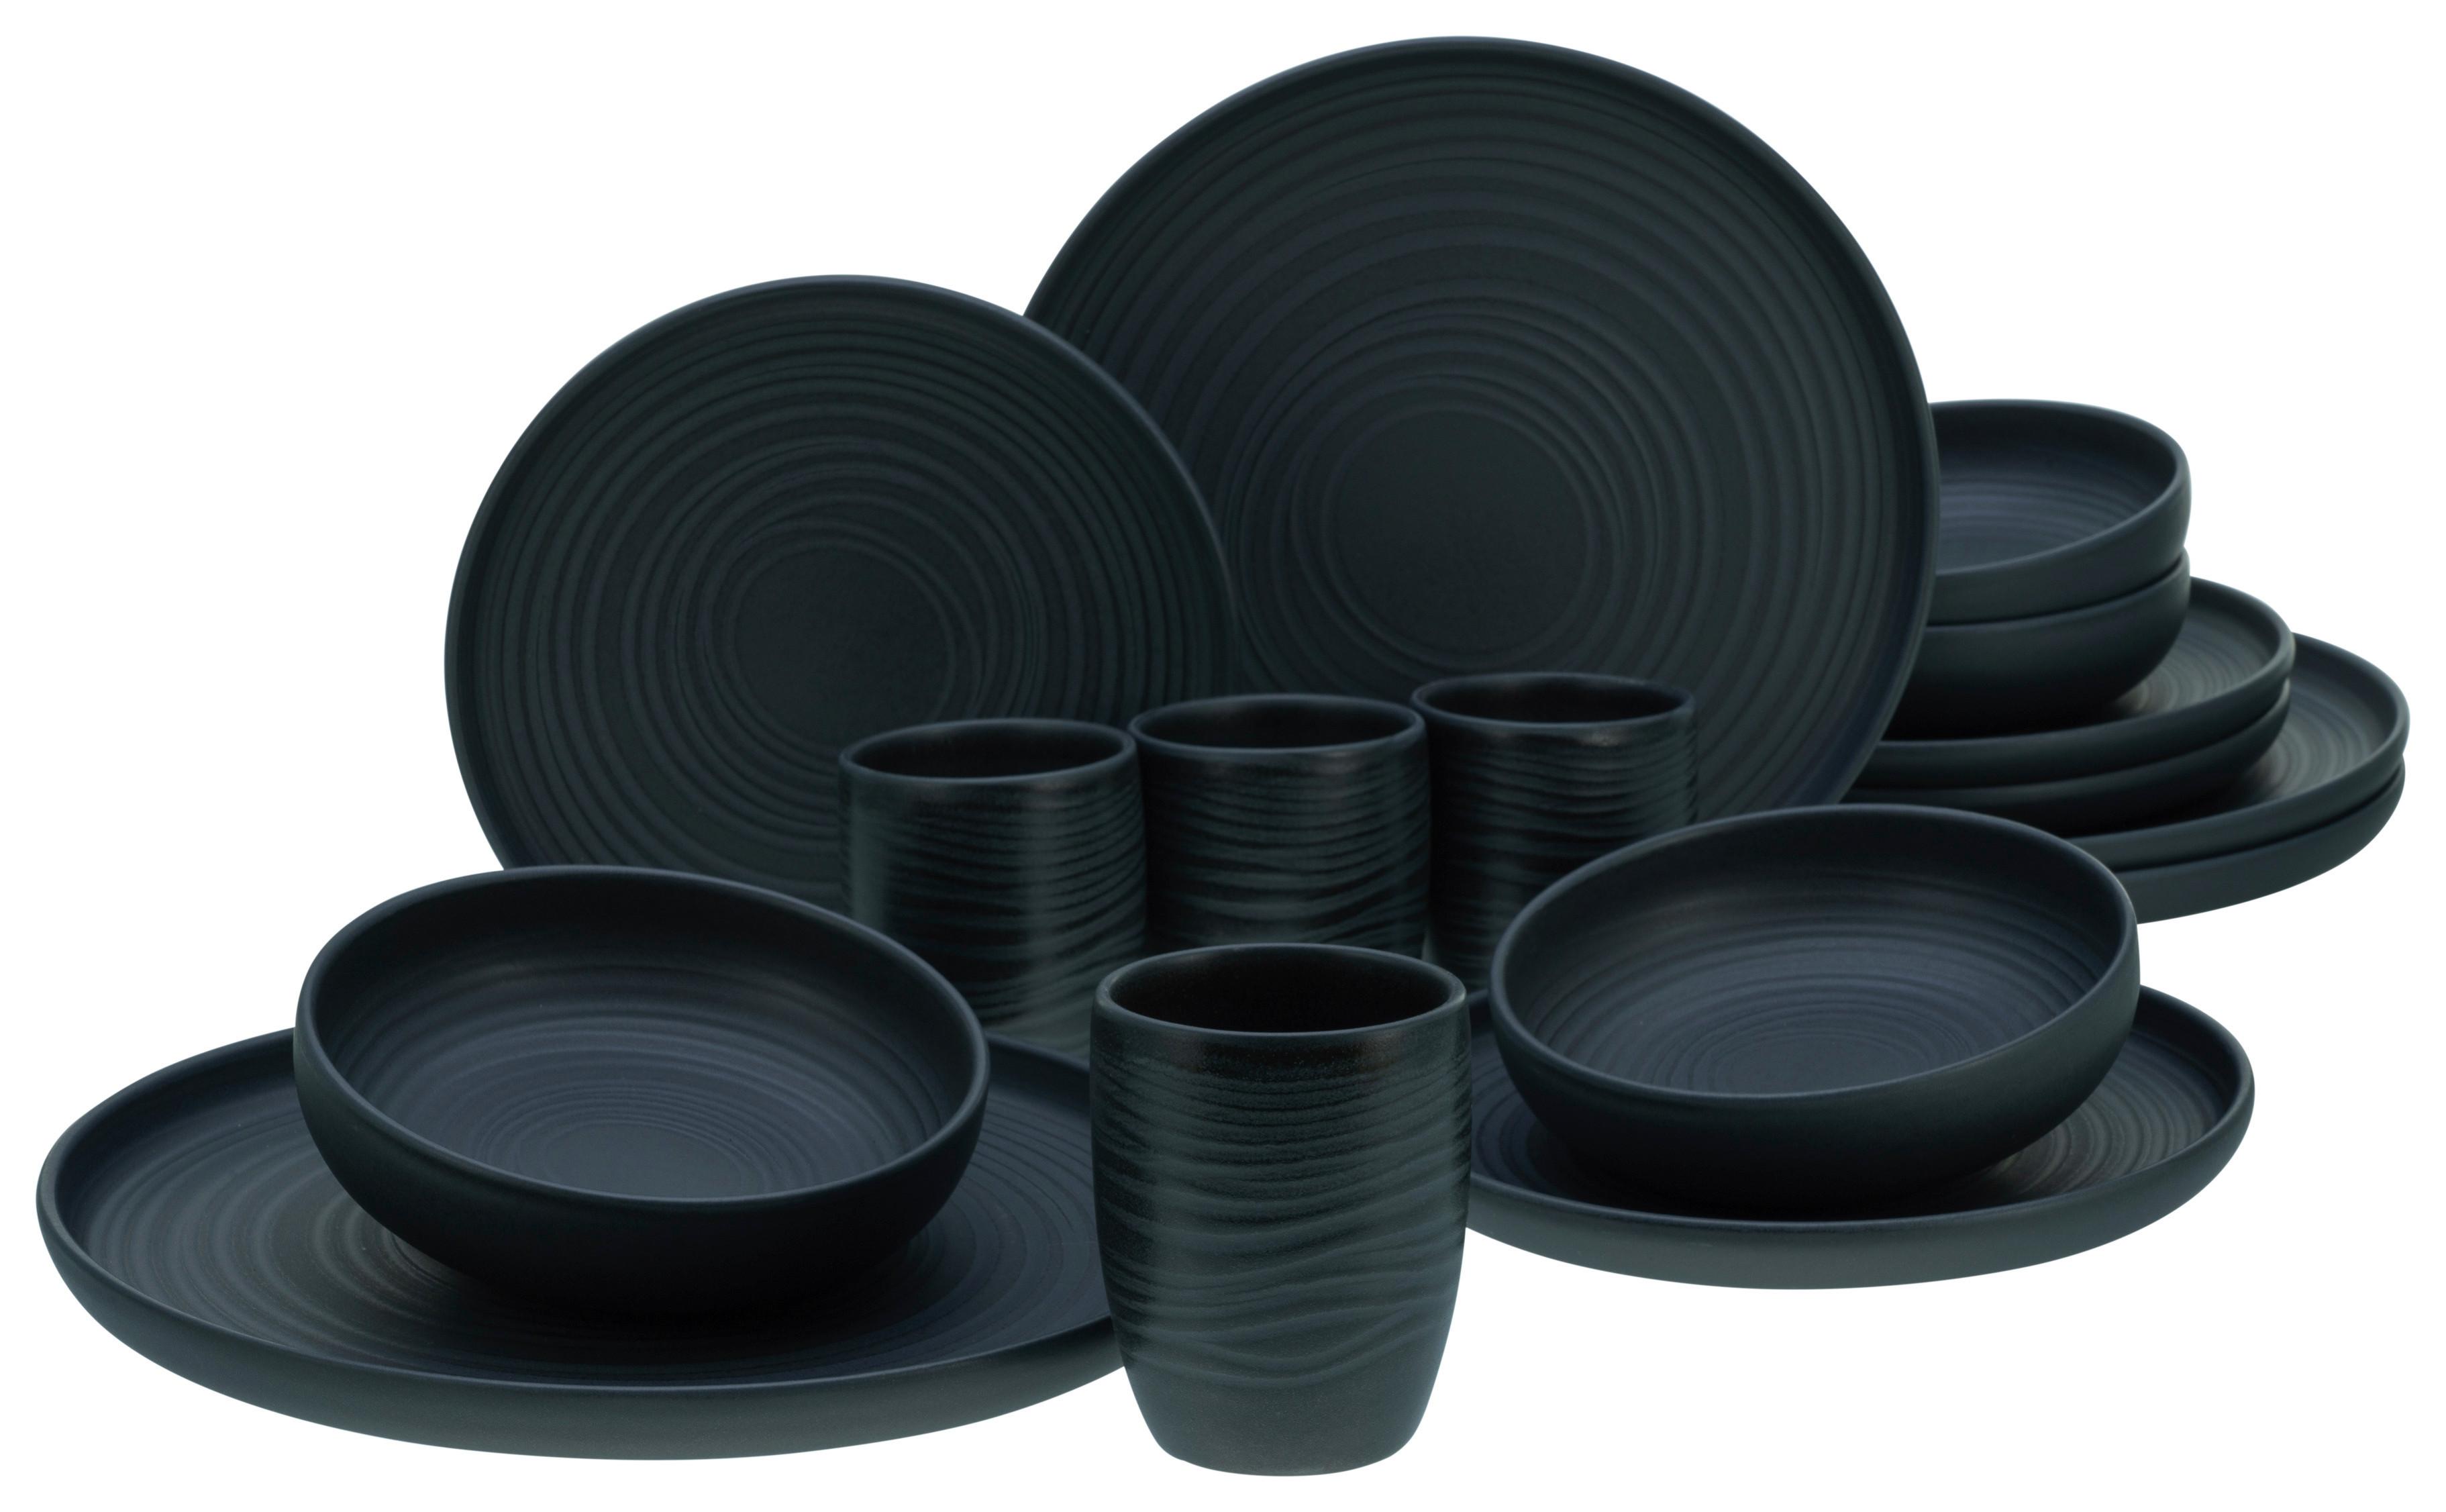 SERWIS OBIADOWO-ŚNIADANIOWY UNO LAVA STONE - czarny, Modern, ceramika (40,5/37/49,5cm) - Creatable